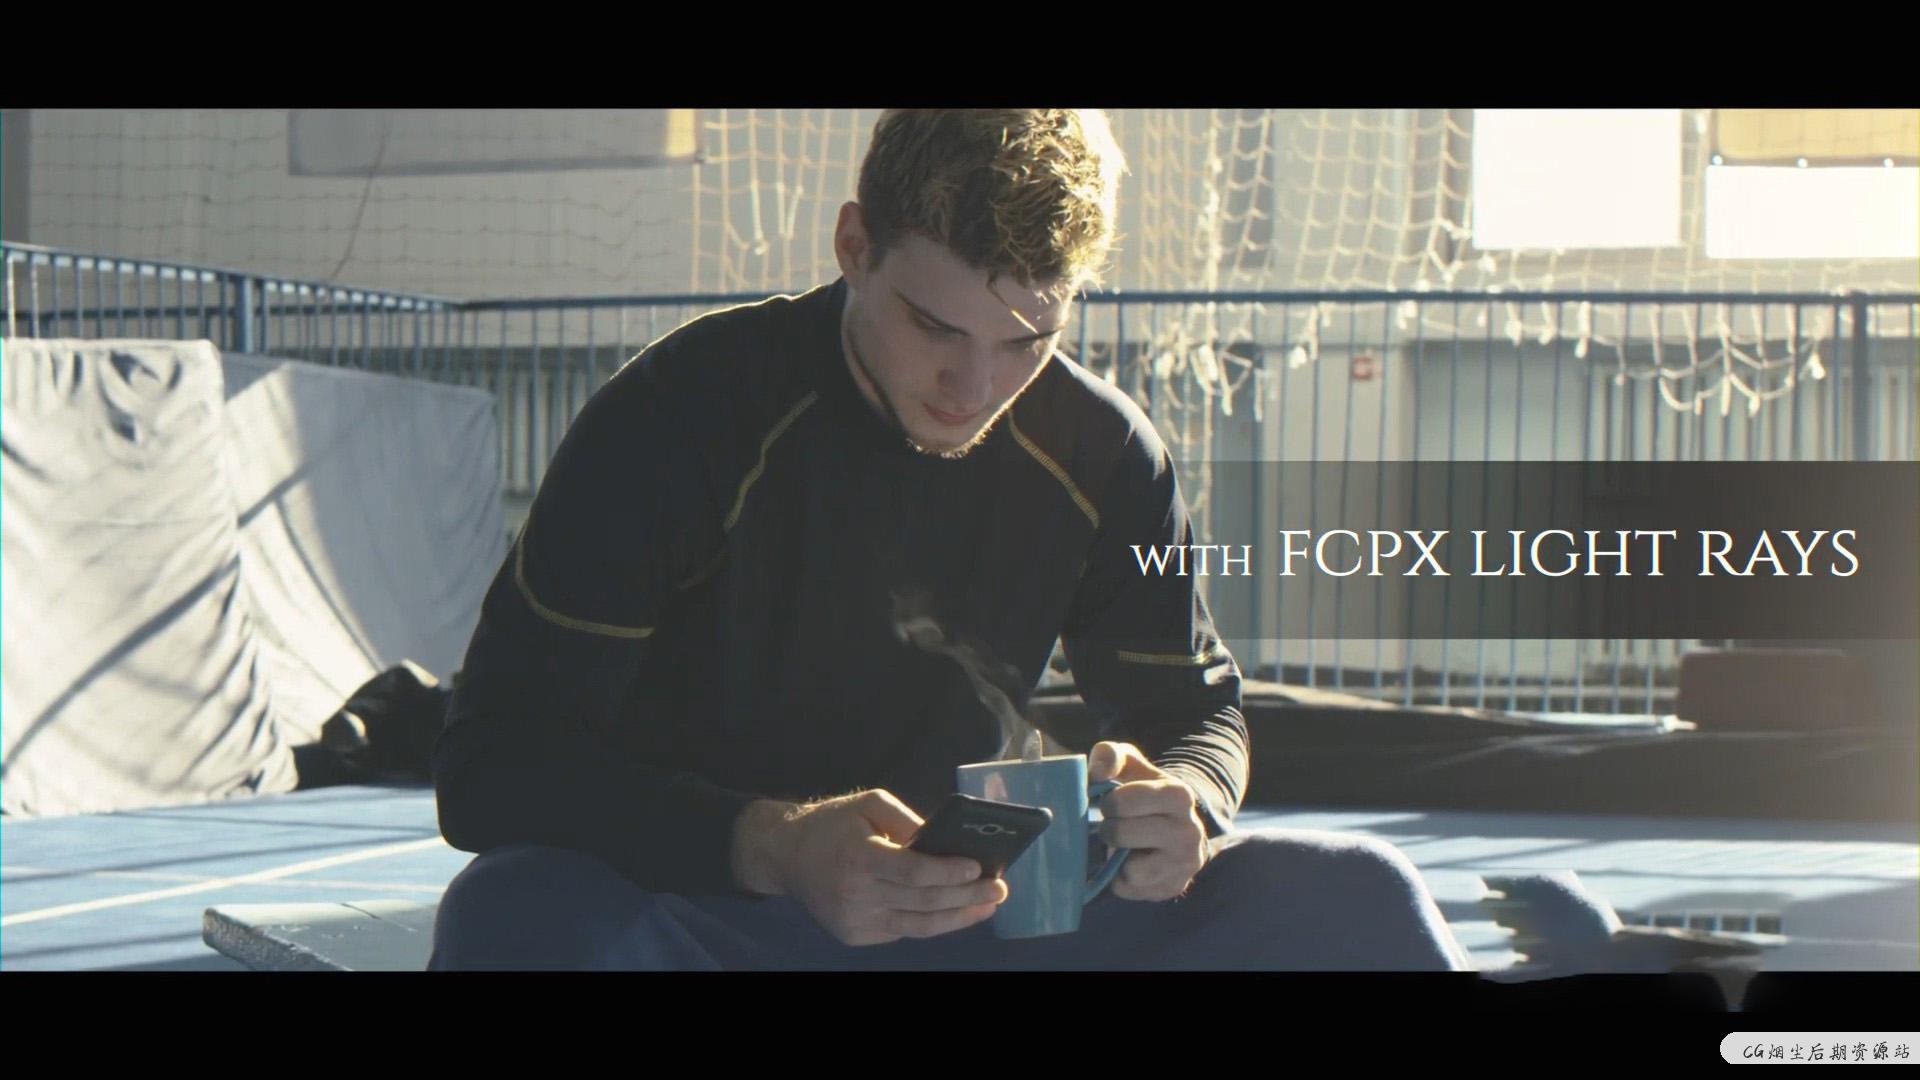 fcpx插件 影片添加光束体积光效果自动跟踪对象